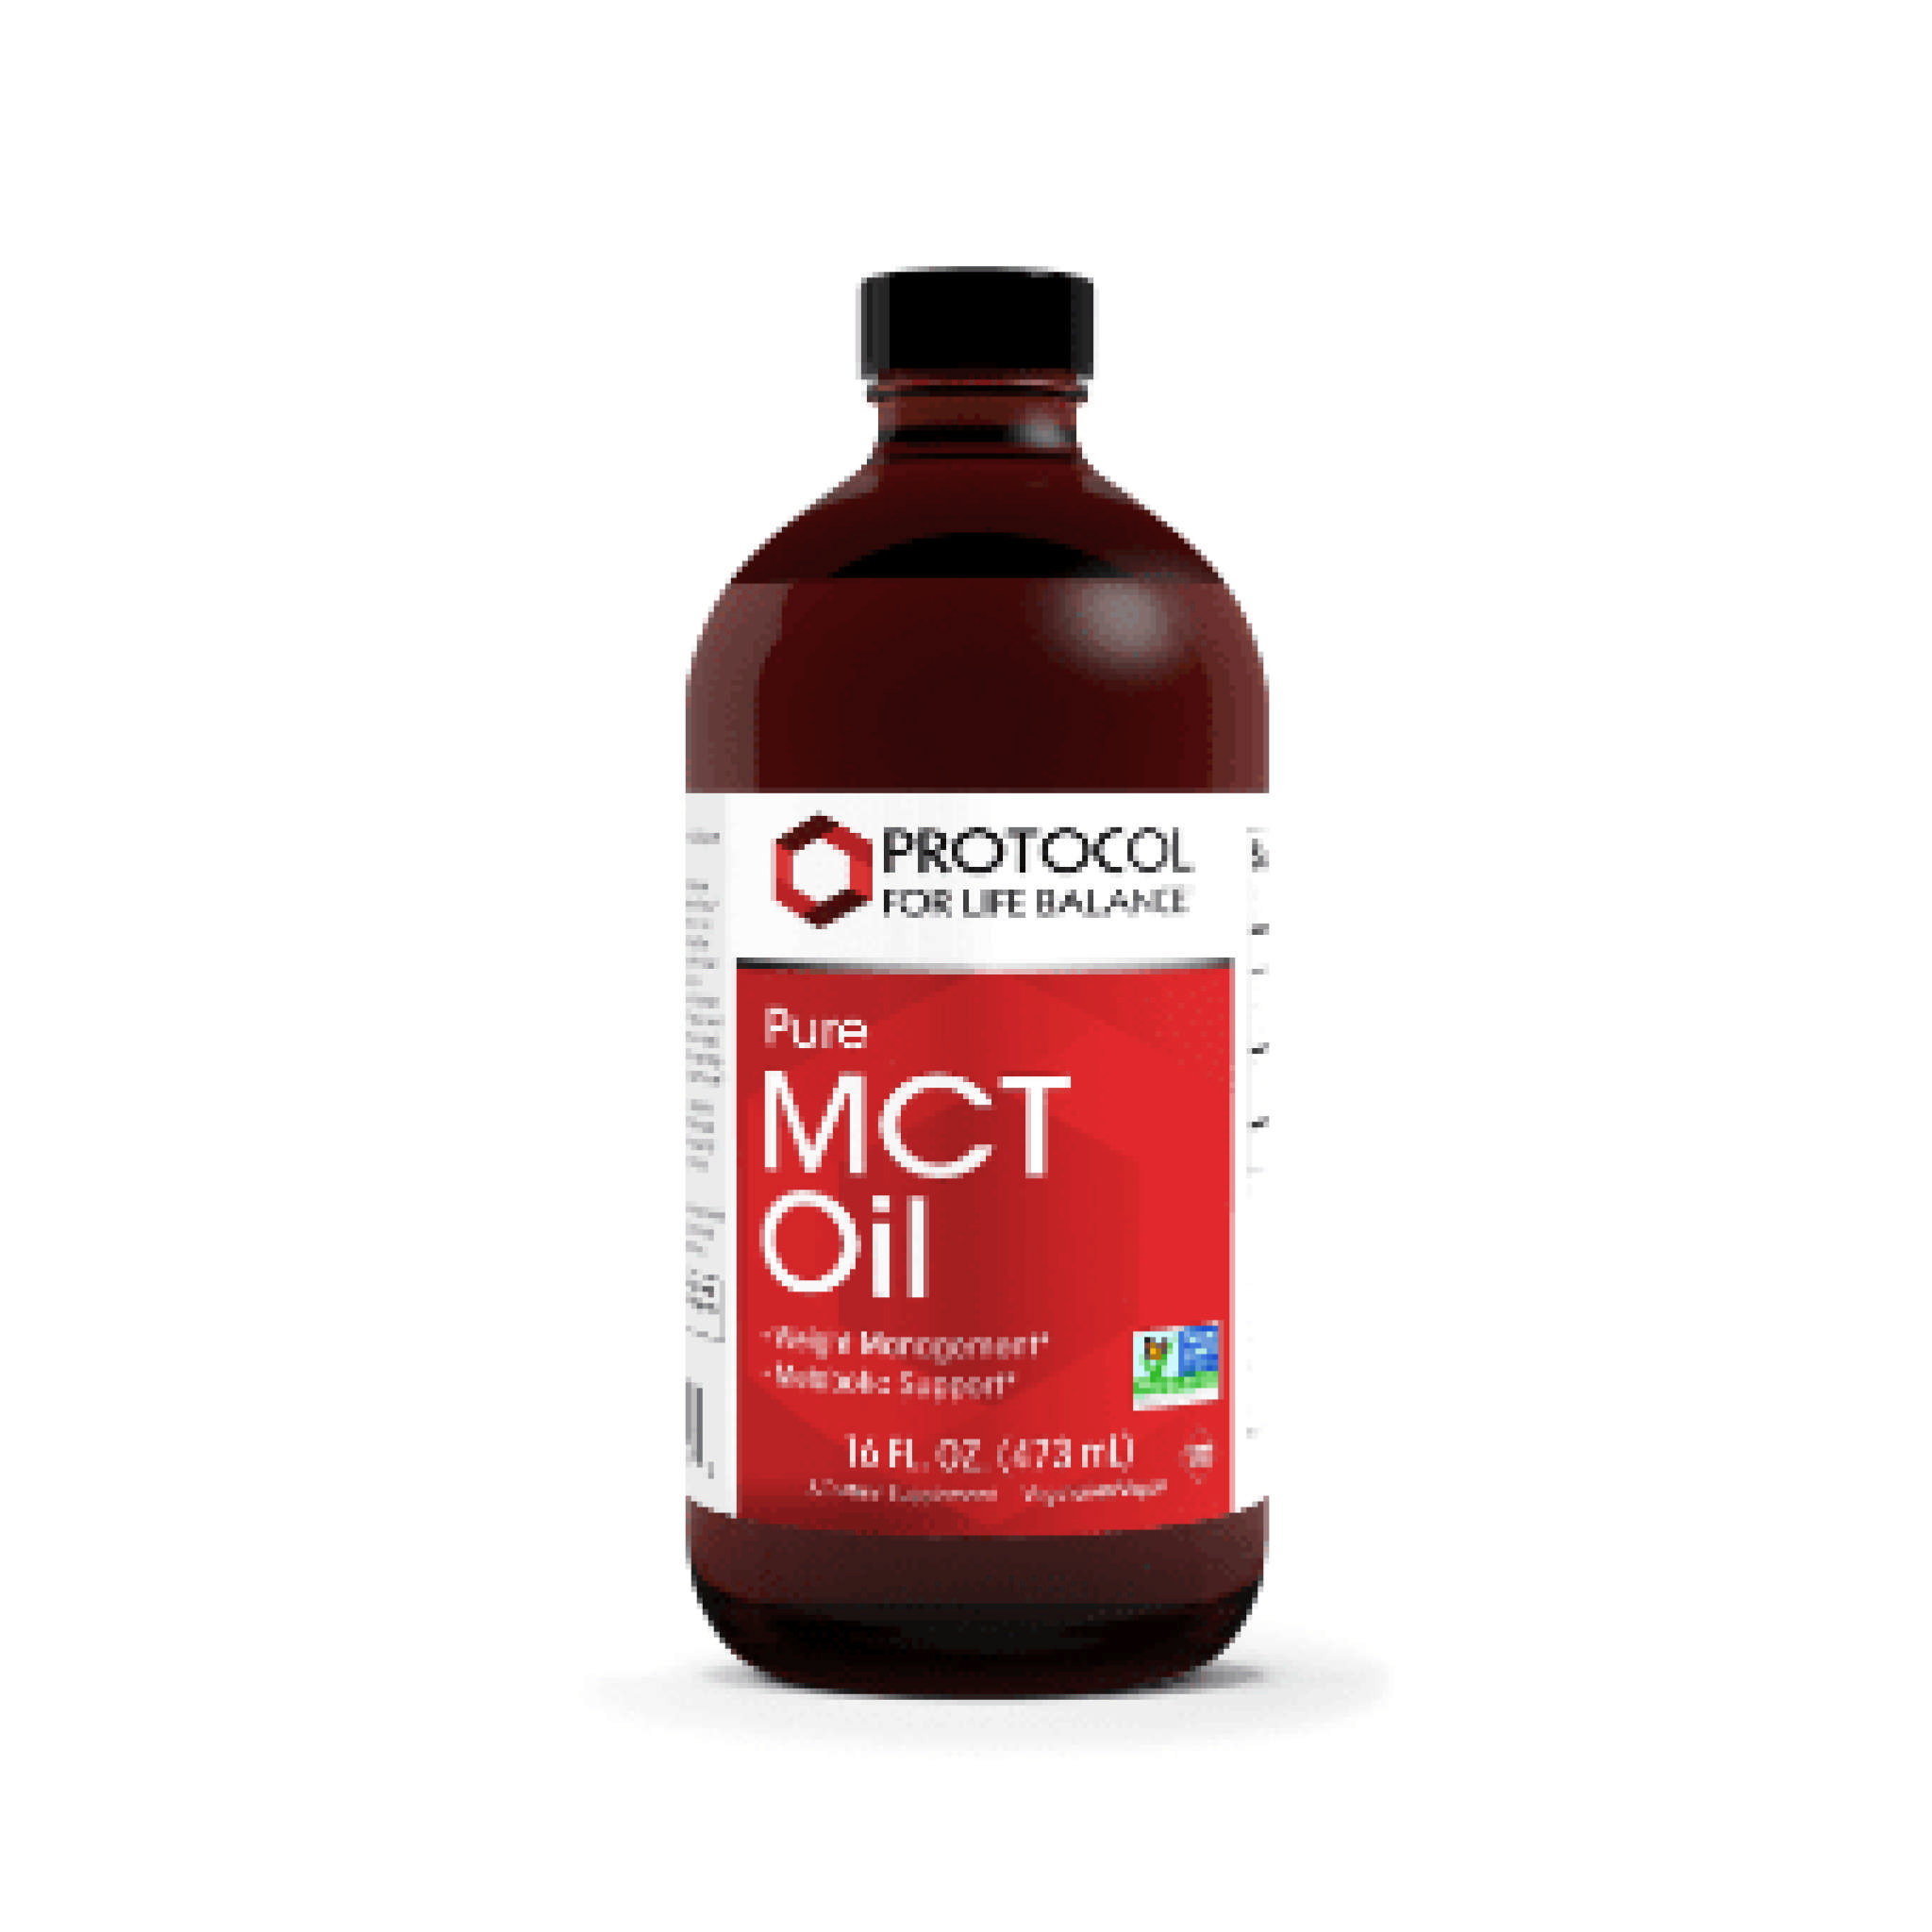 Protocol For Life Balance - Mct Oil liq